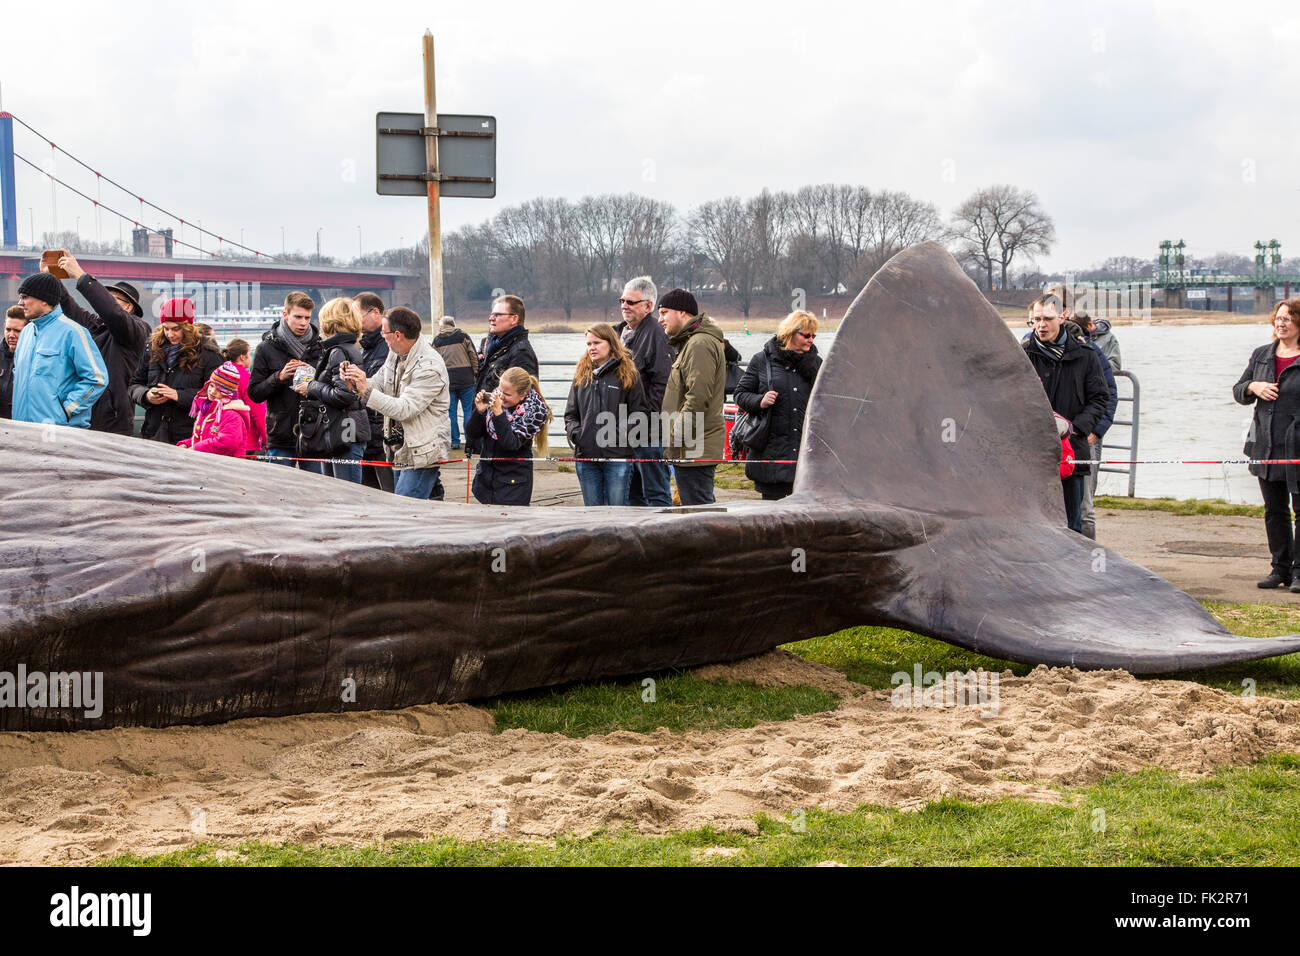 Balena arenata, un arte in termini di prestazioni durante il Duisburger Akzente, un festival di arte a Duisburg in Germania, al fiume Reno, Foto Stock